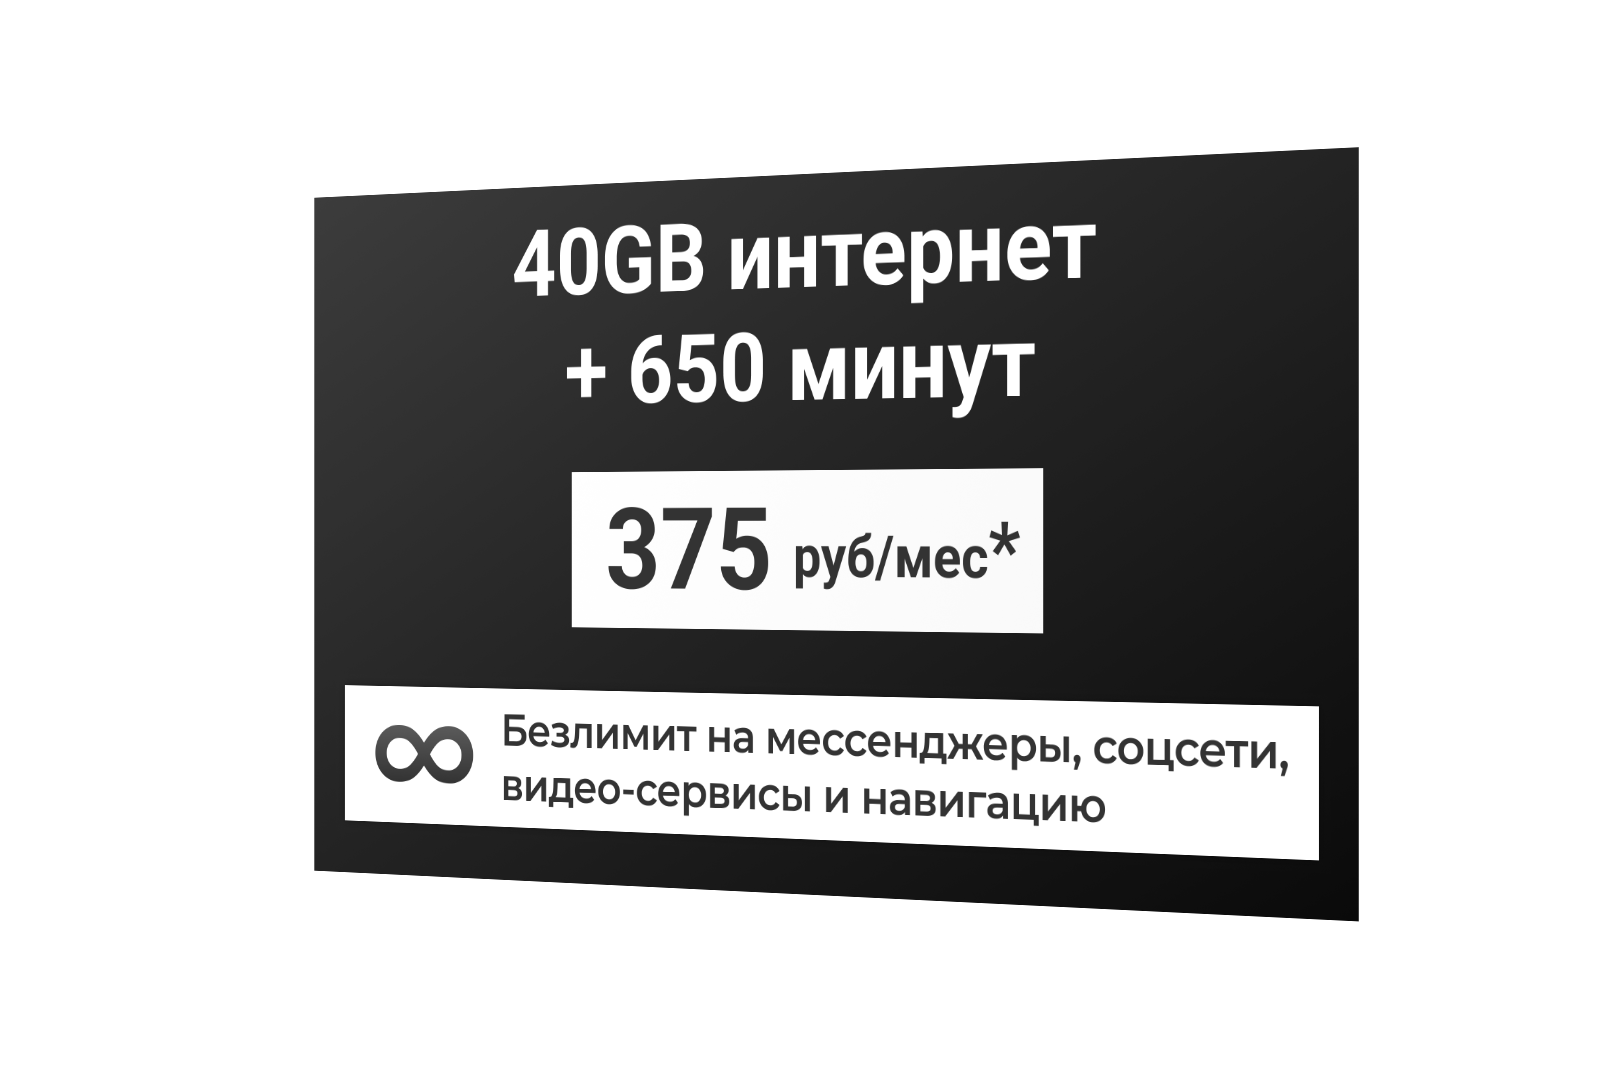 Сим-карта / 650 минут + 40GB + безлимит на мессенджеры соцсети видео-сервисы и навигацию - 375 р/мес* тариф дляартфона (Вся Россия)